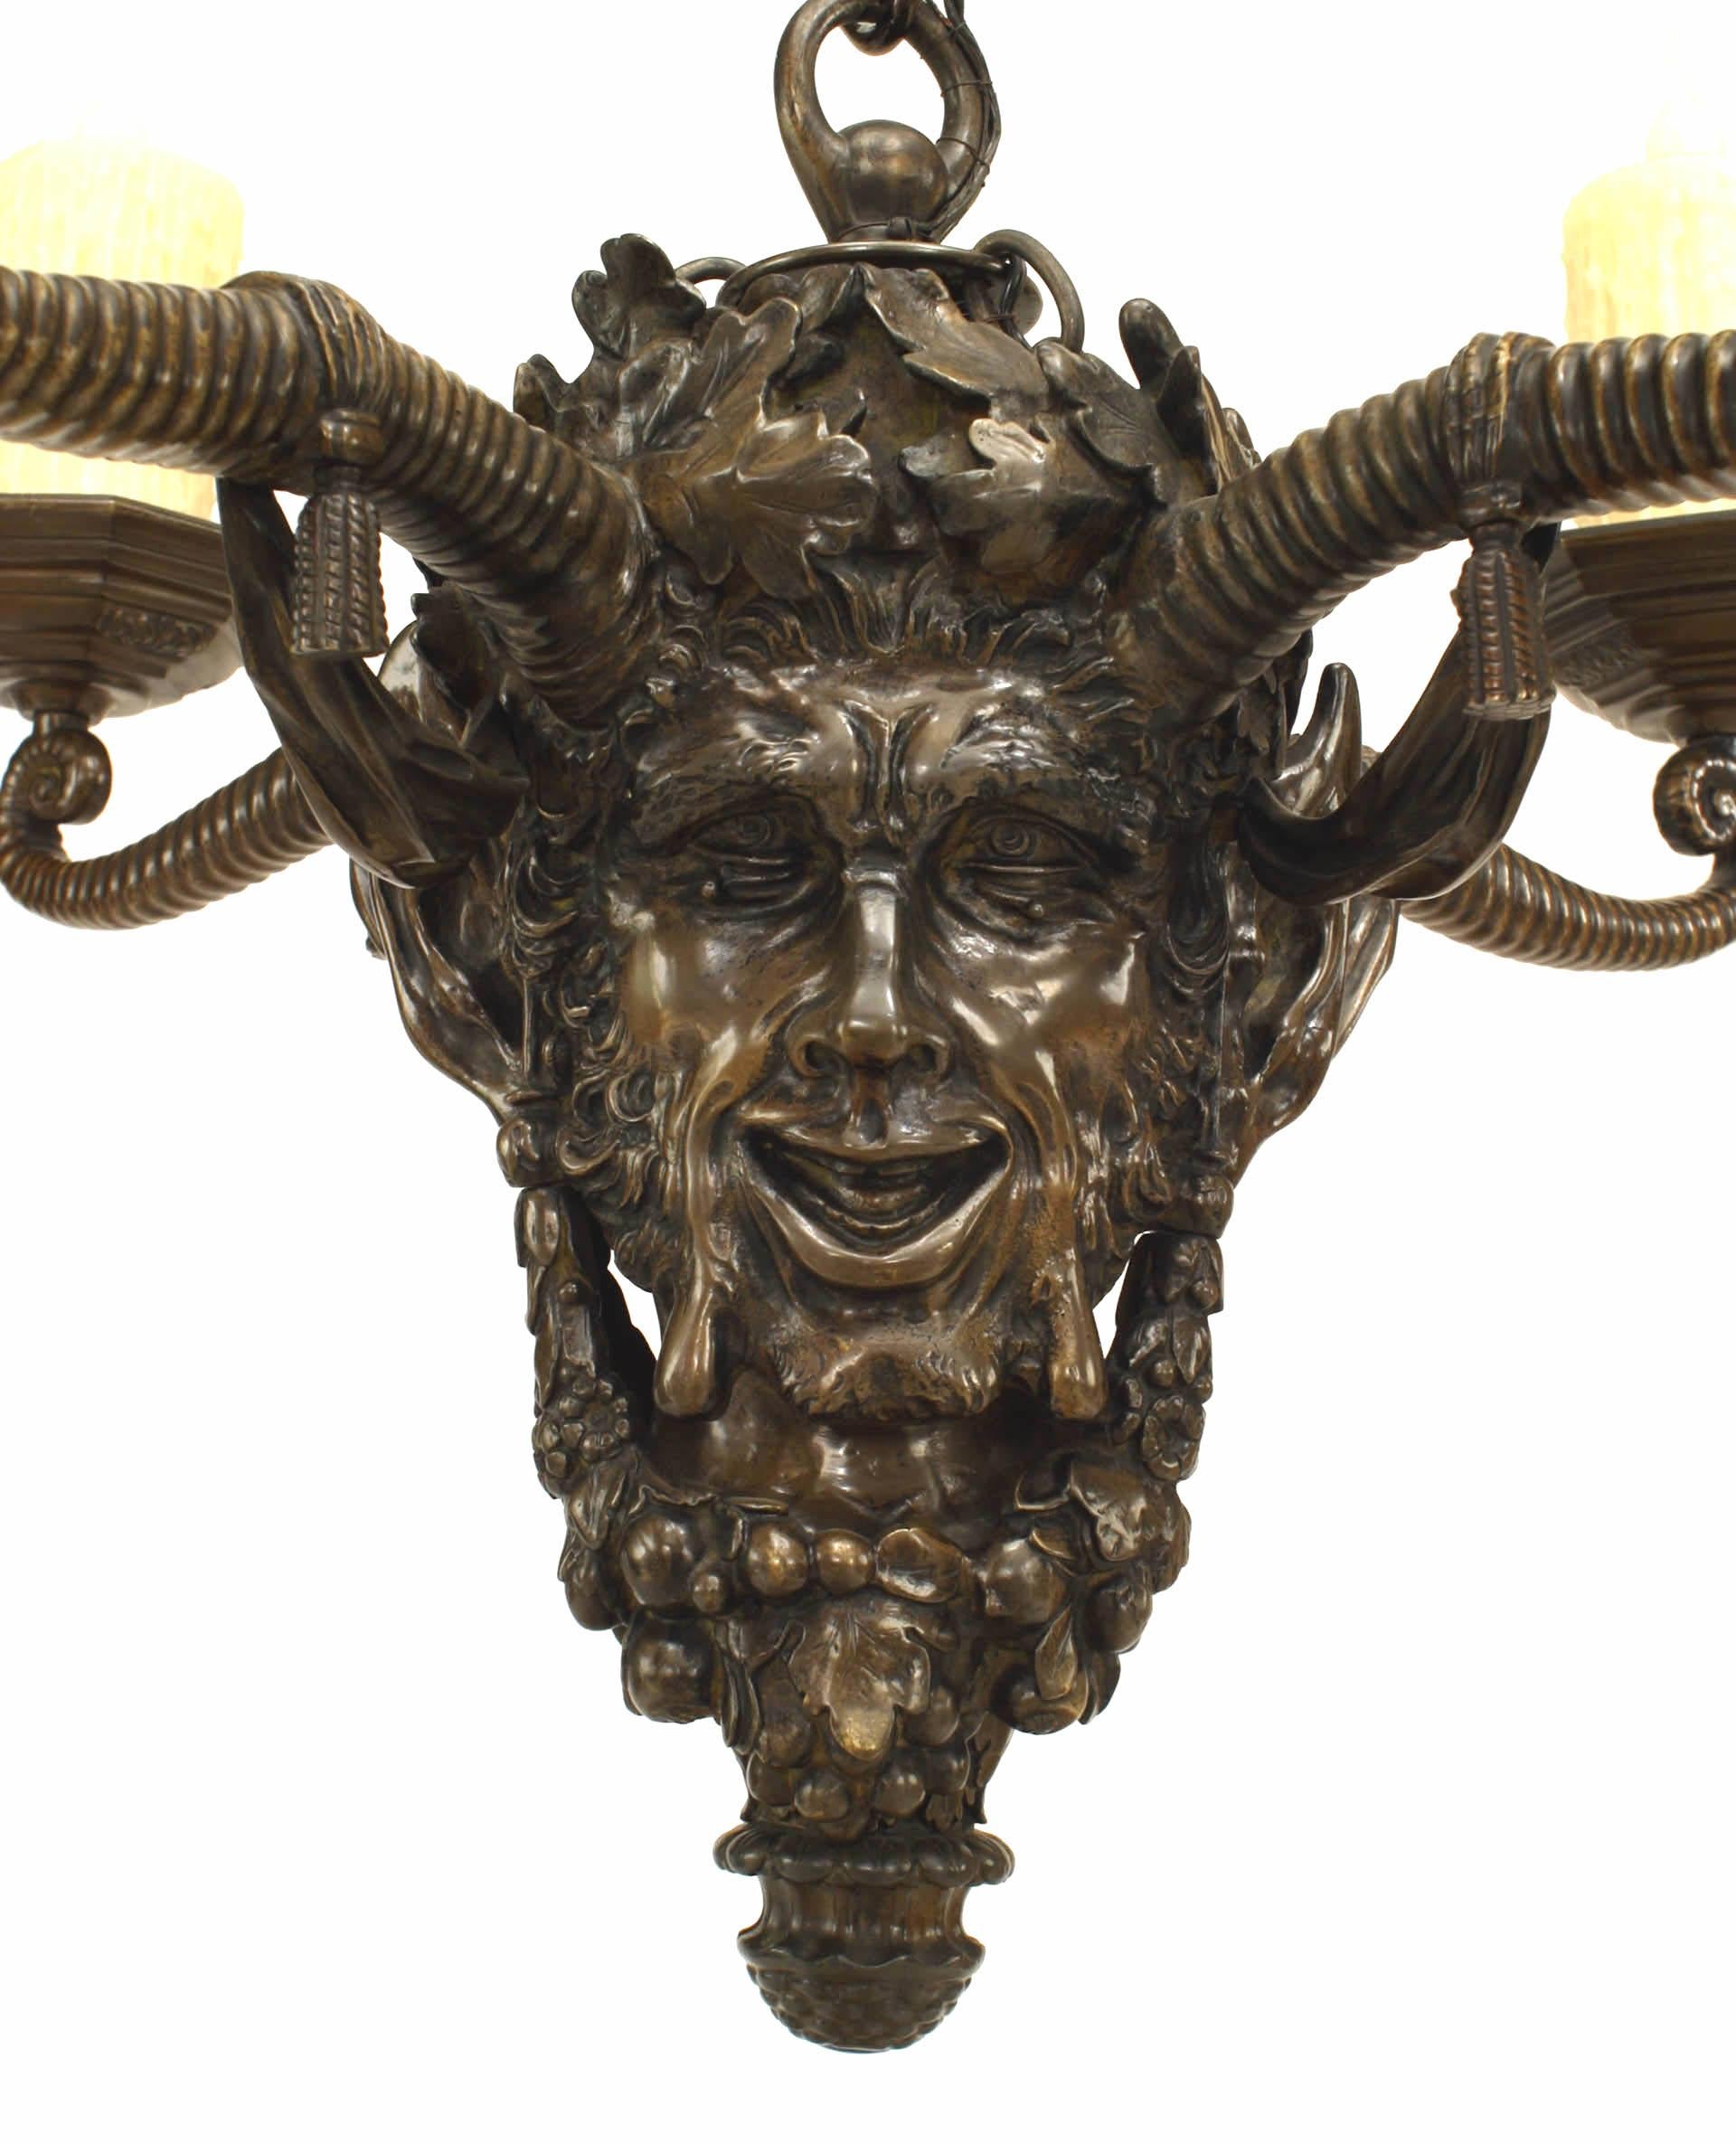 Lustre en bronze de style victorien anglais (fin du 19e siècle) en forme de tête mythologique ornée d'une couronne de feuilles de chêne et de guirlandes, avec 4 bras en corne fantaisistes. (chaîne de 23